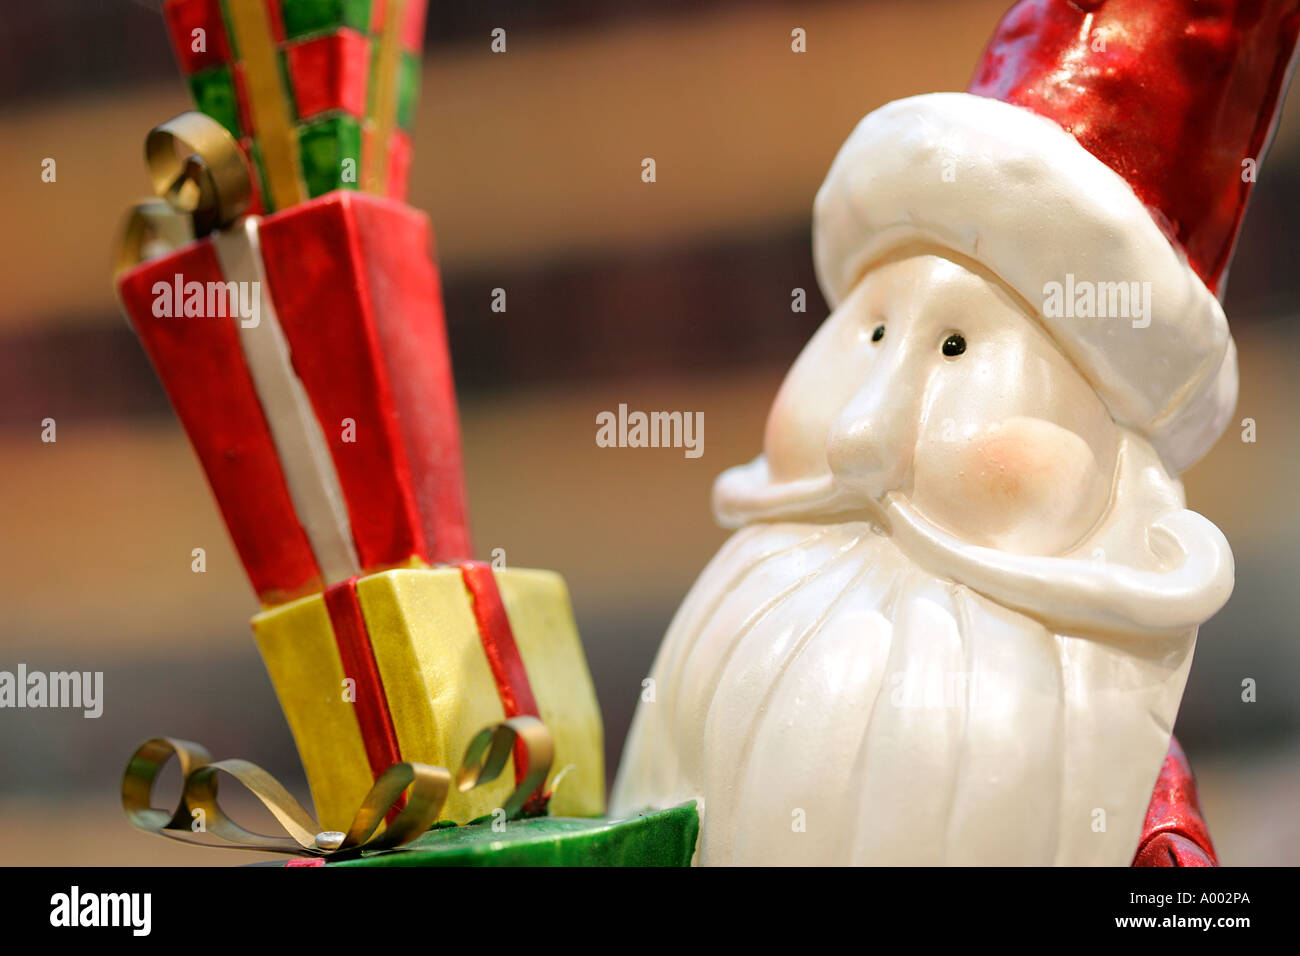 Vater Weihnachten Weihnachten X-Mas Dekoration Spielzeug dekorieren Party Feier weichen Geschenke Weihnachtsbeleuchtung christlichen New Year Eve Tim Stockfoto